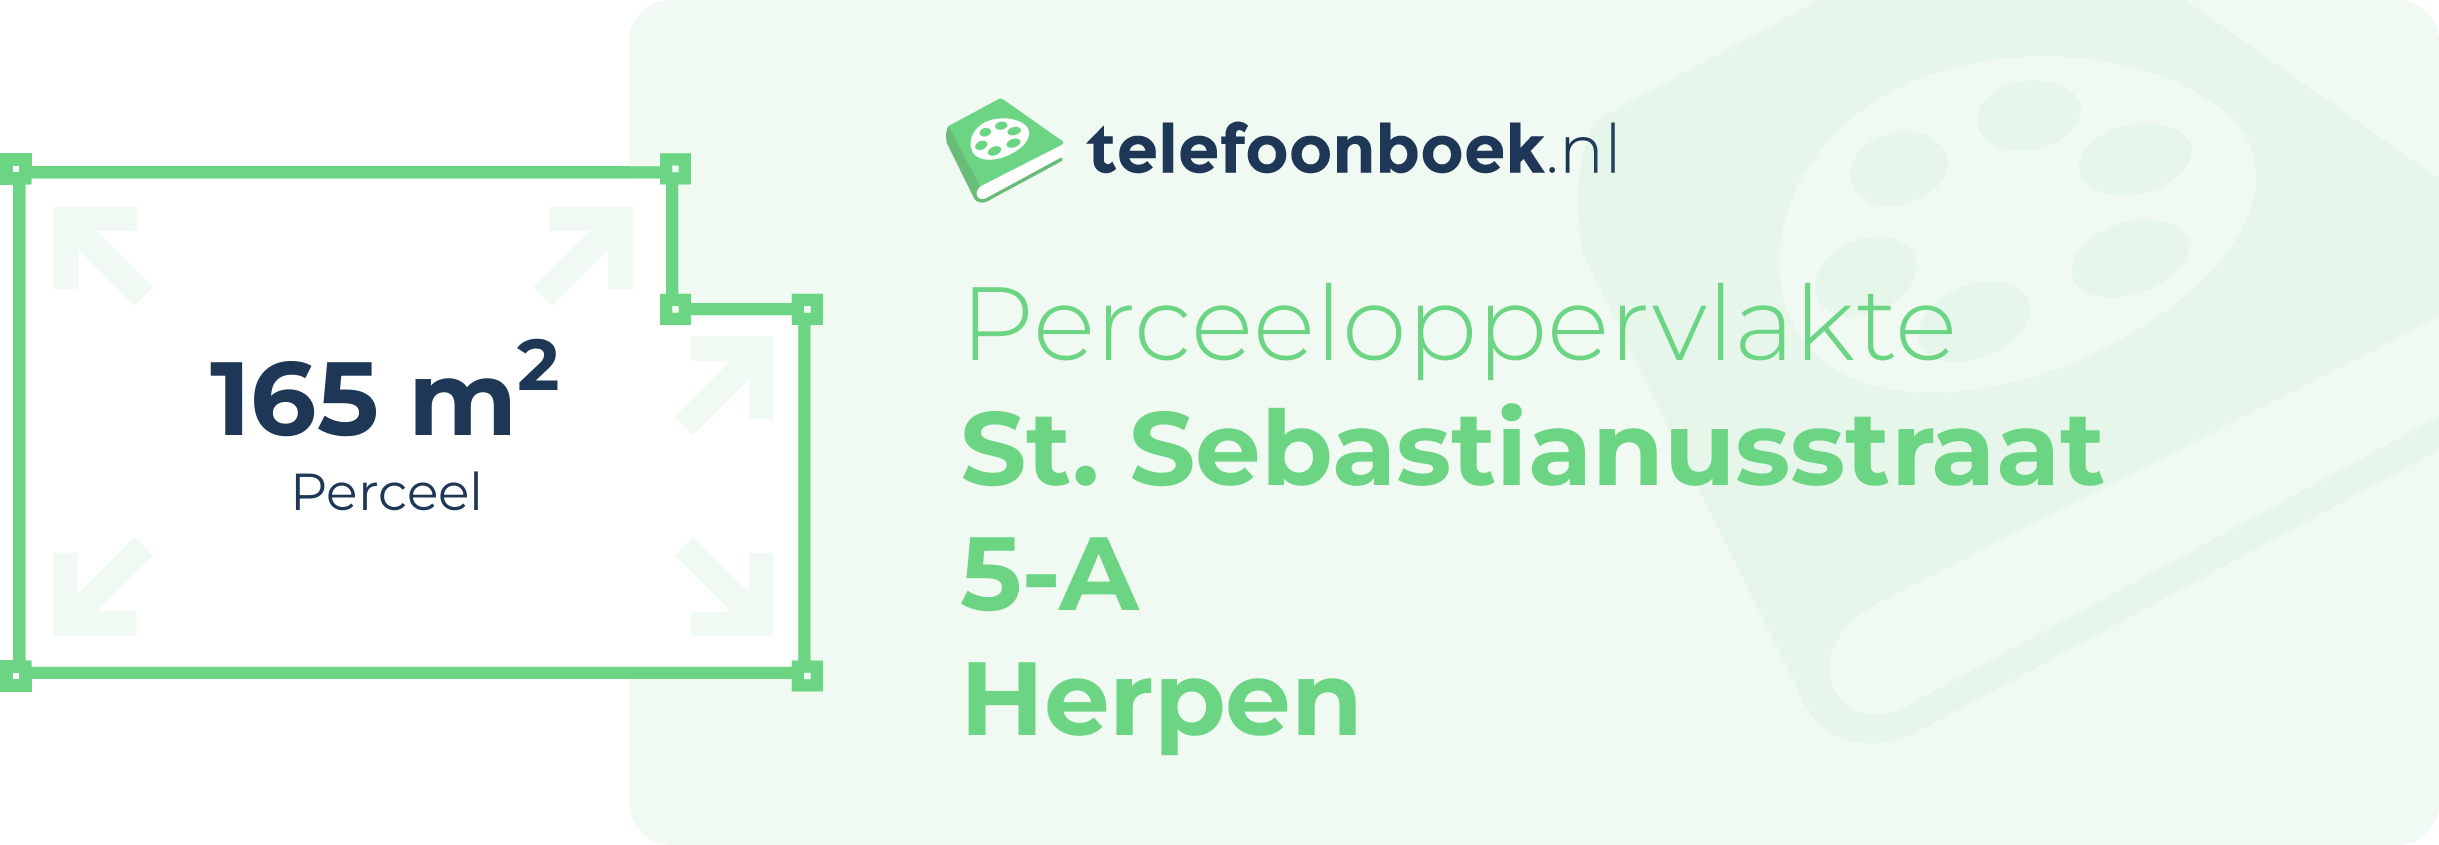 Perceeloppervlakte St. Sebastianusstraat 5-A Herpen